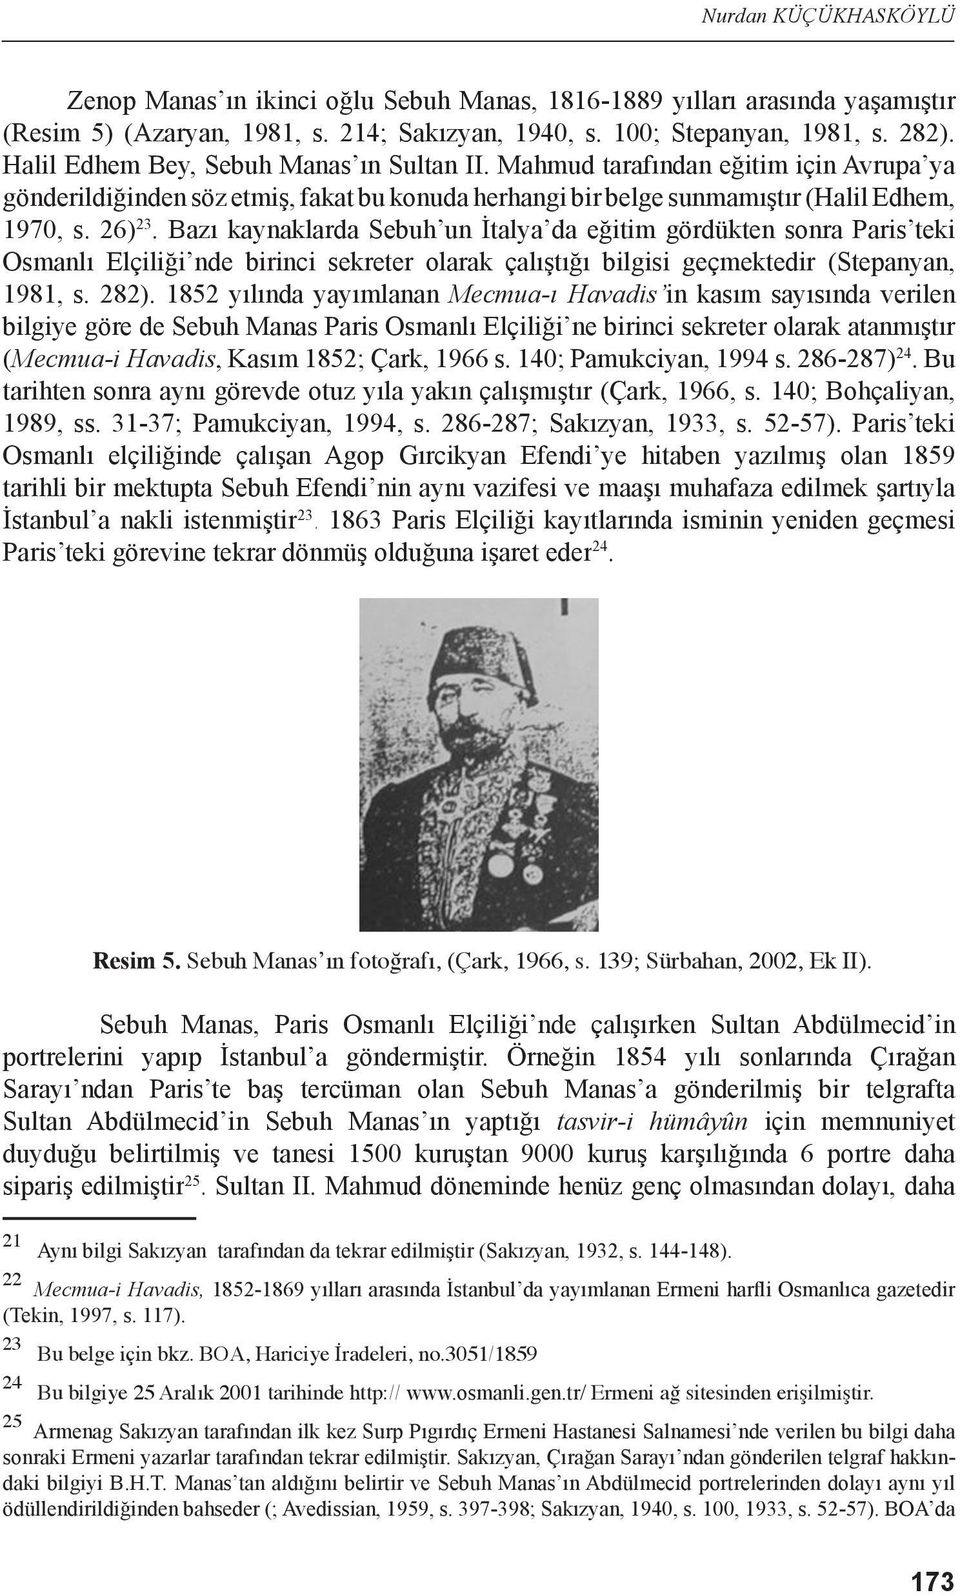 Bazı kaynaklarda Sebuh un İtalya da eğitim gördükten sonra Paris teki Osmanlı Elçiliği nde birinci sekreter olarak çalıştığı bilgisi geçmektedir (Stepanyan, 1981, s. 282).